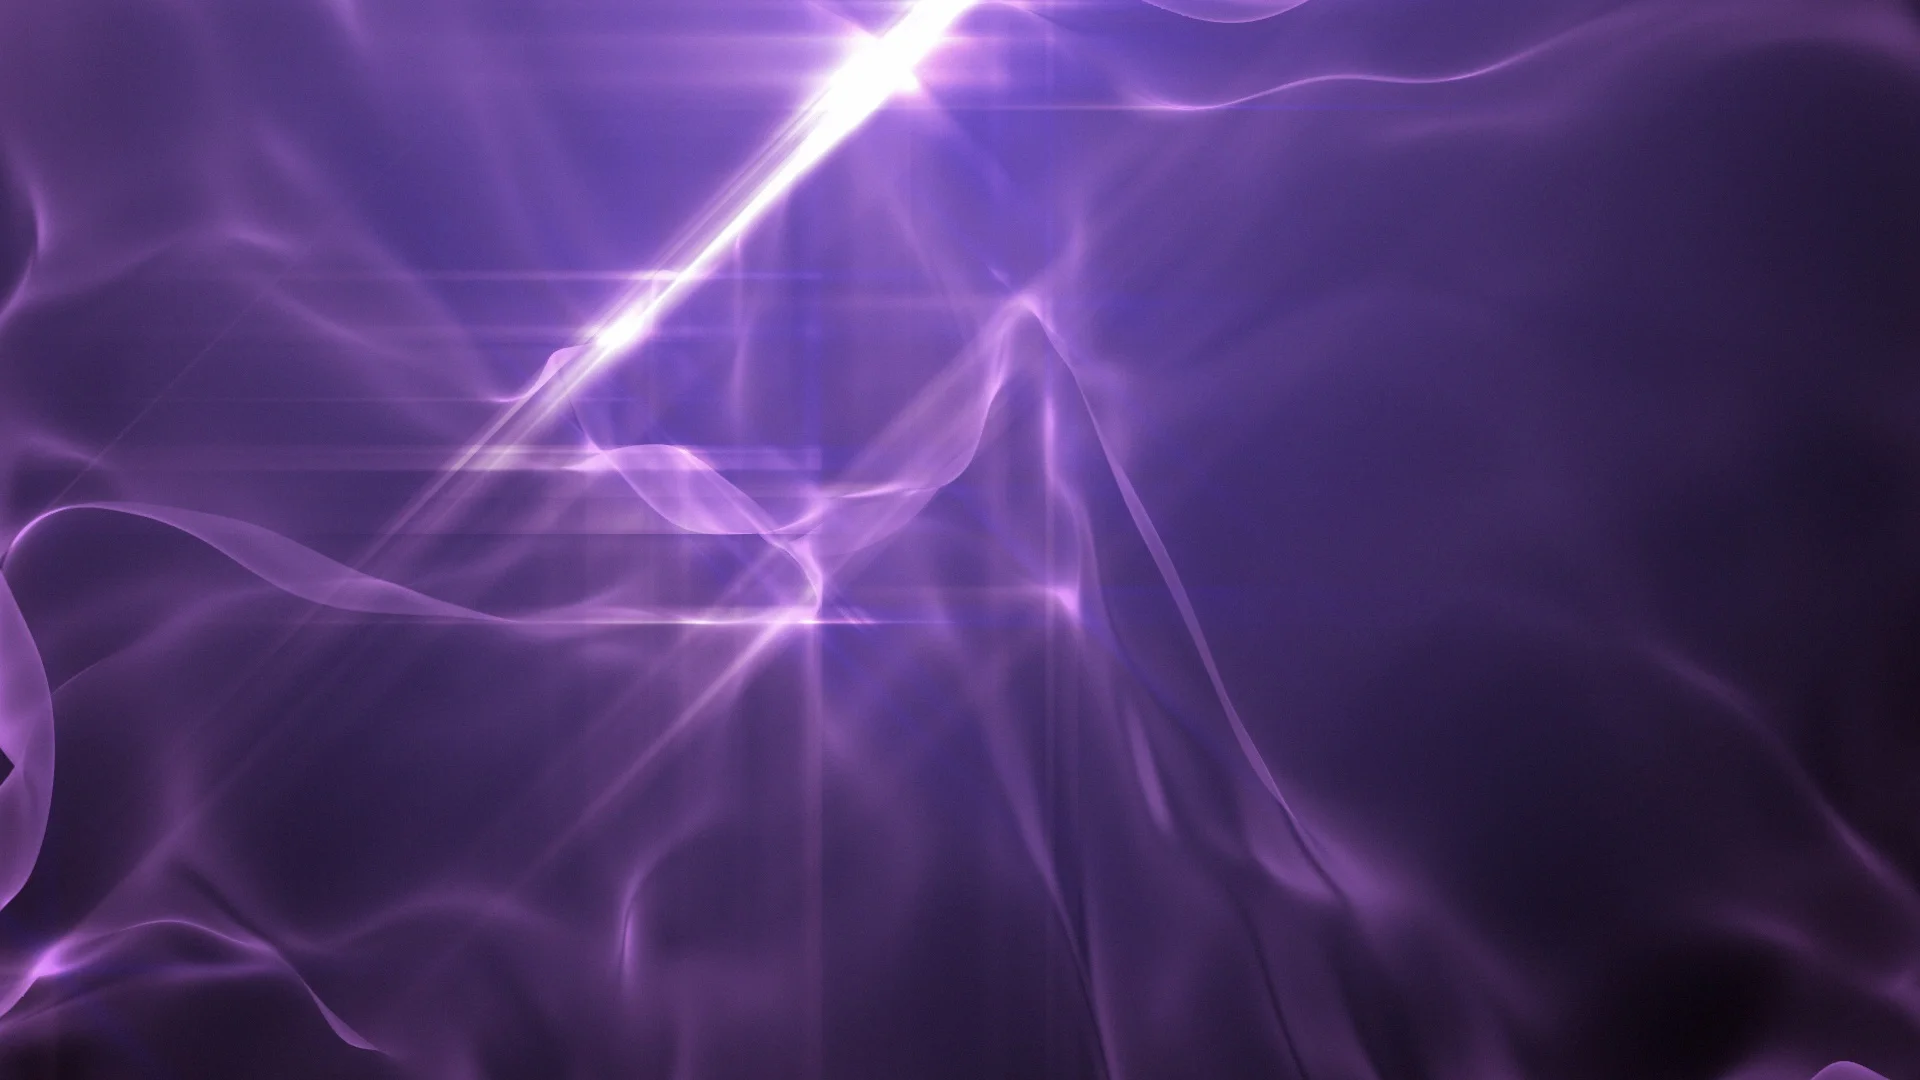 Plasma tím: Những chùm plasma tím rực rỡ trông giống như một vũ trụ đầy mê hoặc. Khám phá những hình ảnh về plasma tím để đắm mình trong không gian khác lạ, tưởng chừng như chỉ có trong những bộ phim viễn tưởng.